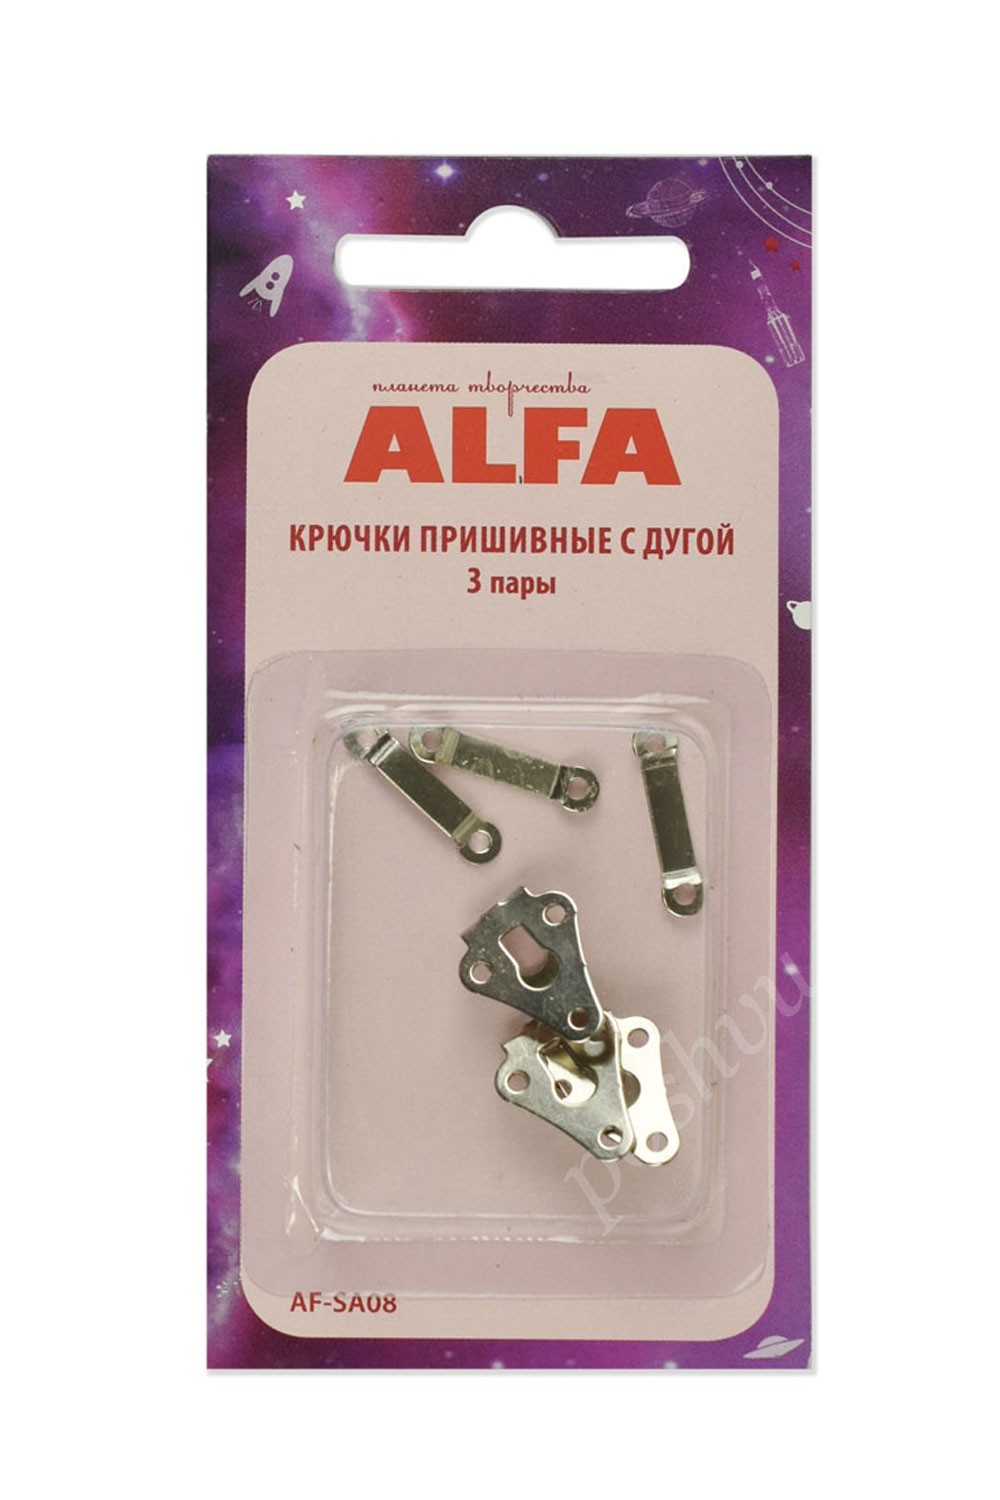 Крючки пришивные с дугой ALFA 3 пары